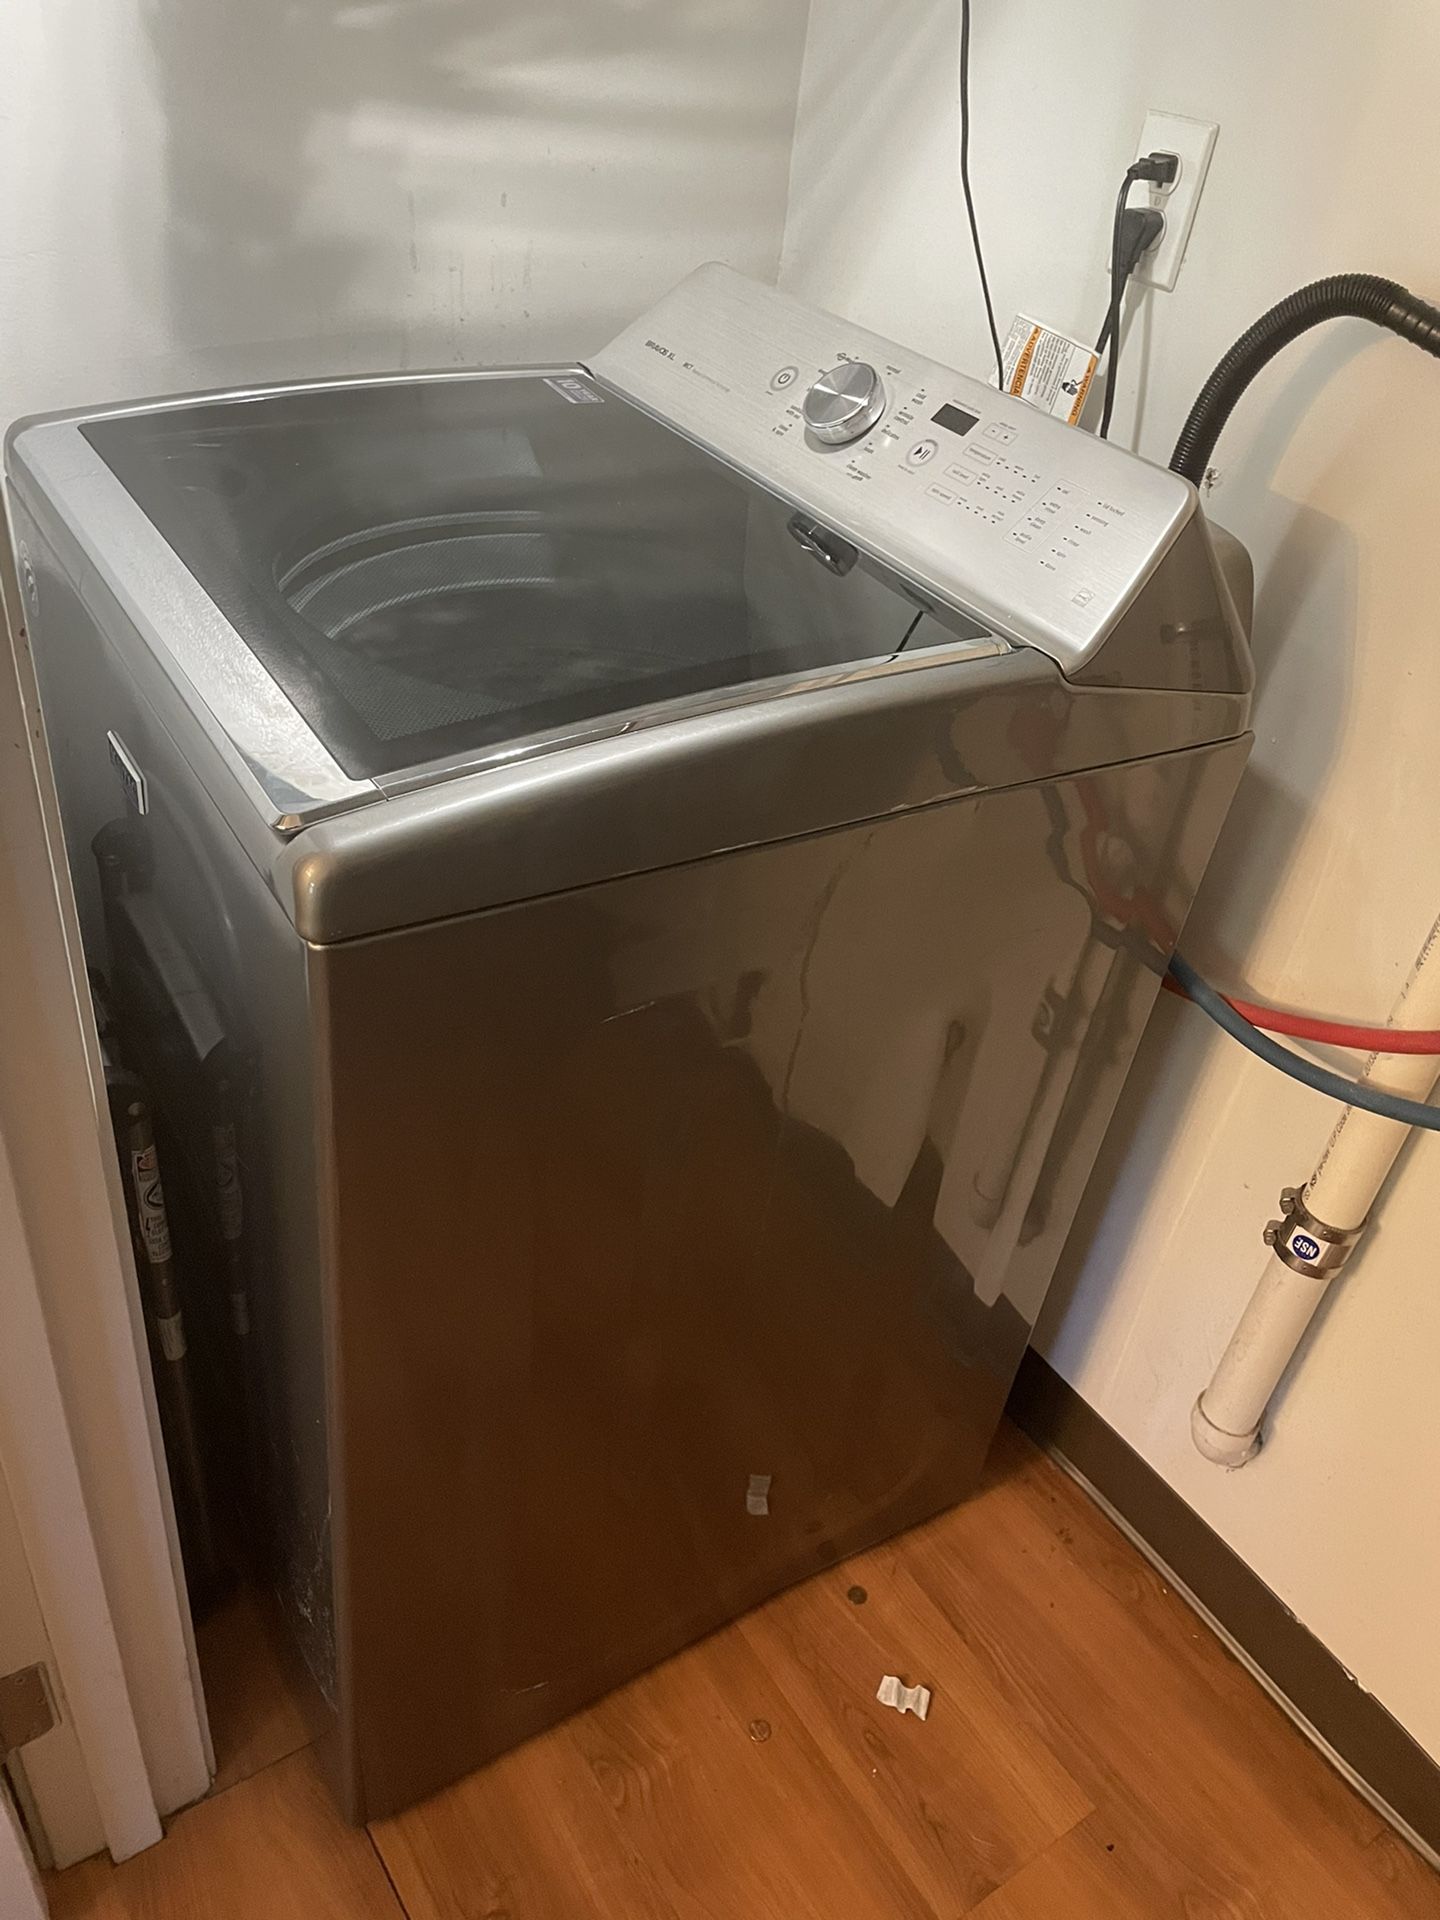 Maytag Brovos XL Washer Machine